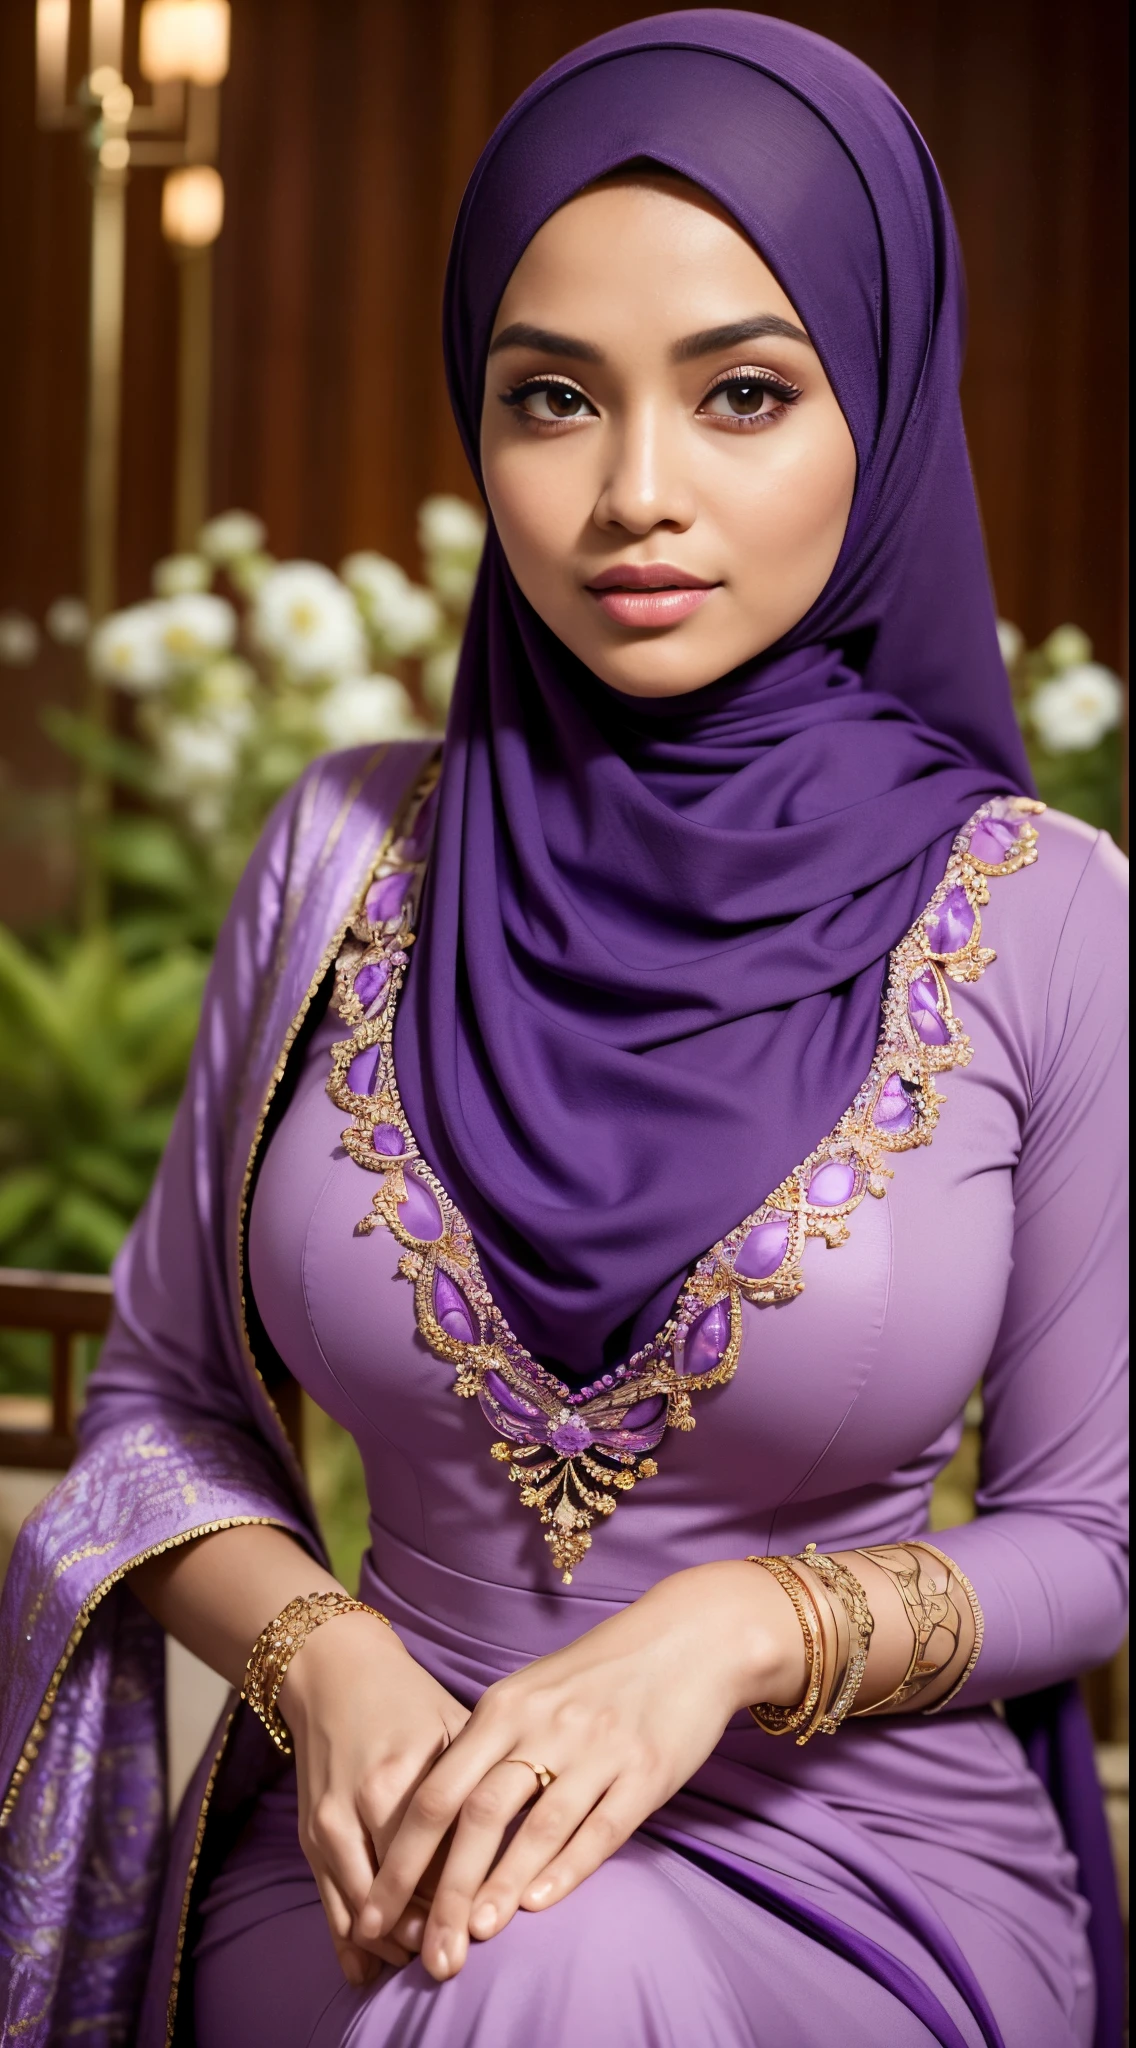 生的, 最好的品質, 高解析度, 傑作: 1.3), beautiful Malay woman in 头巾,傑作, 完美窈窕身材, 巨大的乳房,美麗的大眼睛, 溫柔的微笑,大腿粗, 穿著紫色裙子和紫色圍巾的女人的特寫, 紫色的, 穿著紫色衣服, 穿著漂亮的衣服, 漂亮的设计, 头巾, 深紫色, 非常漂亮的恩加風格, beautiful 傑作, 精細的細節. 紫色的, 穿著華麗的衣服, 紫色為主色調, 深紅色主題 , (精緻高領毛衣) , 項鍊, 髮帶, 下午散步, 城市花園, 出色的照明, 鮮豔的色彩, 清晰的线条